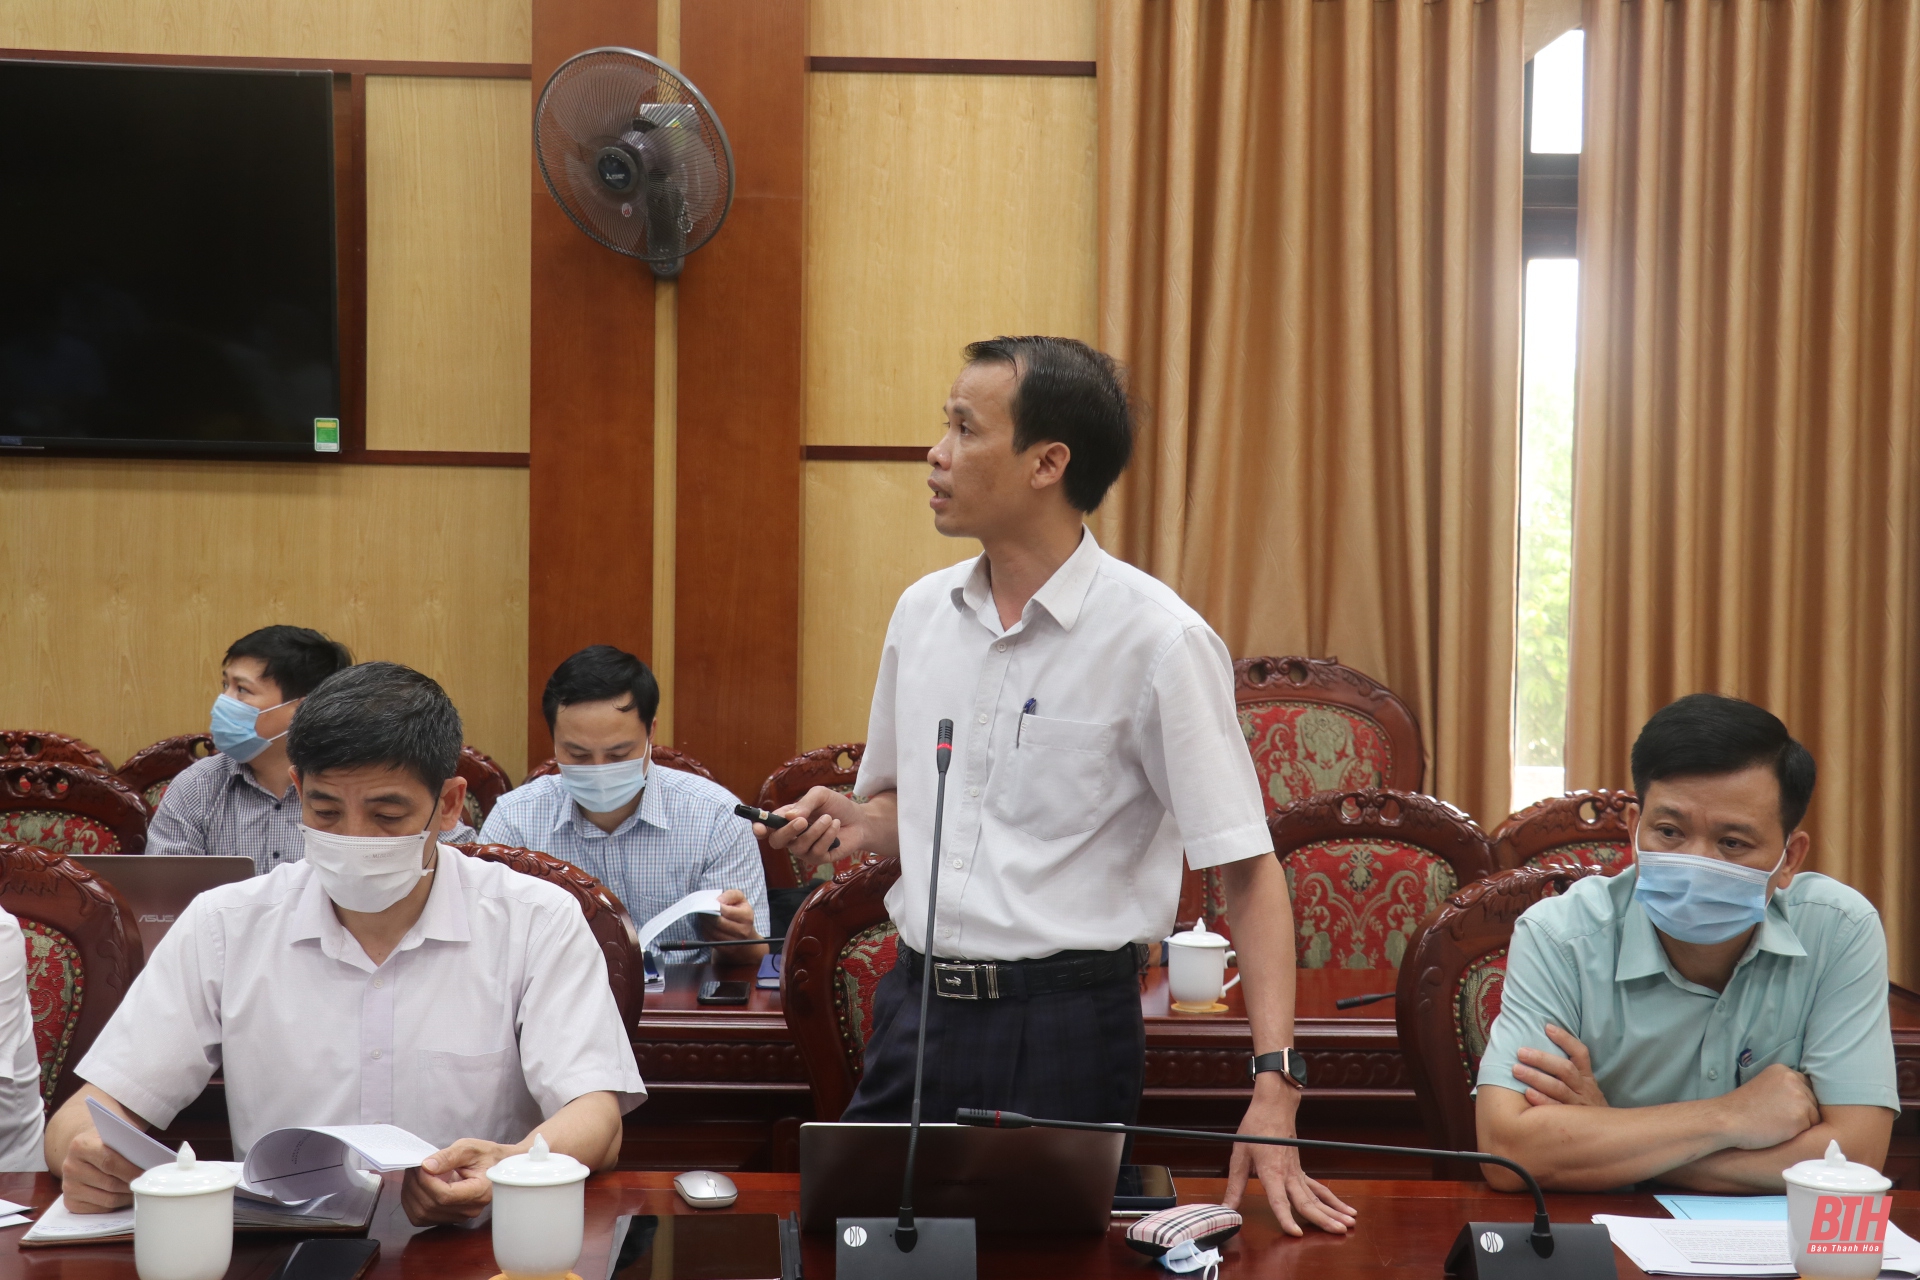 Phó Chủ tịch UBND tỉnh Mai Xuân Liêm nghe báo cáo cơ chế, chính sách thu hút đầu tư và hỗ trợ trong Khu CNTT Thanh Hoá